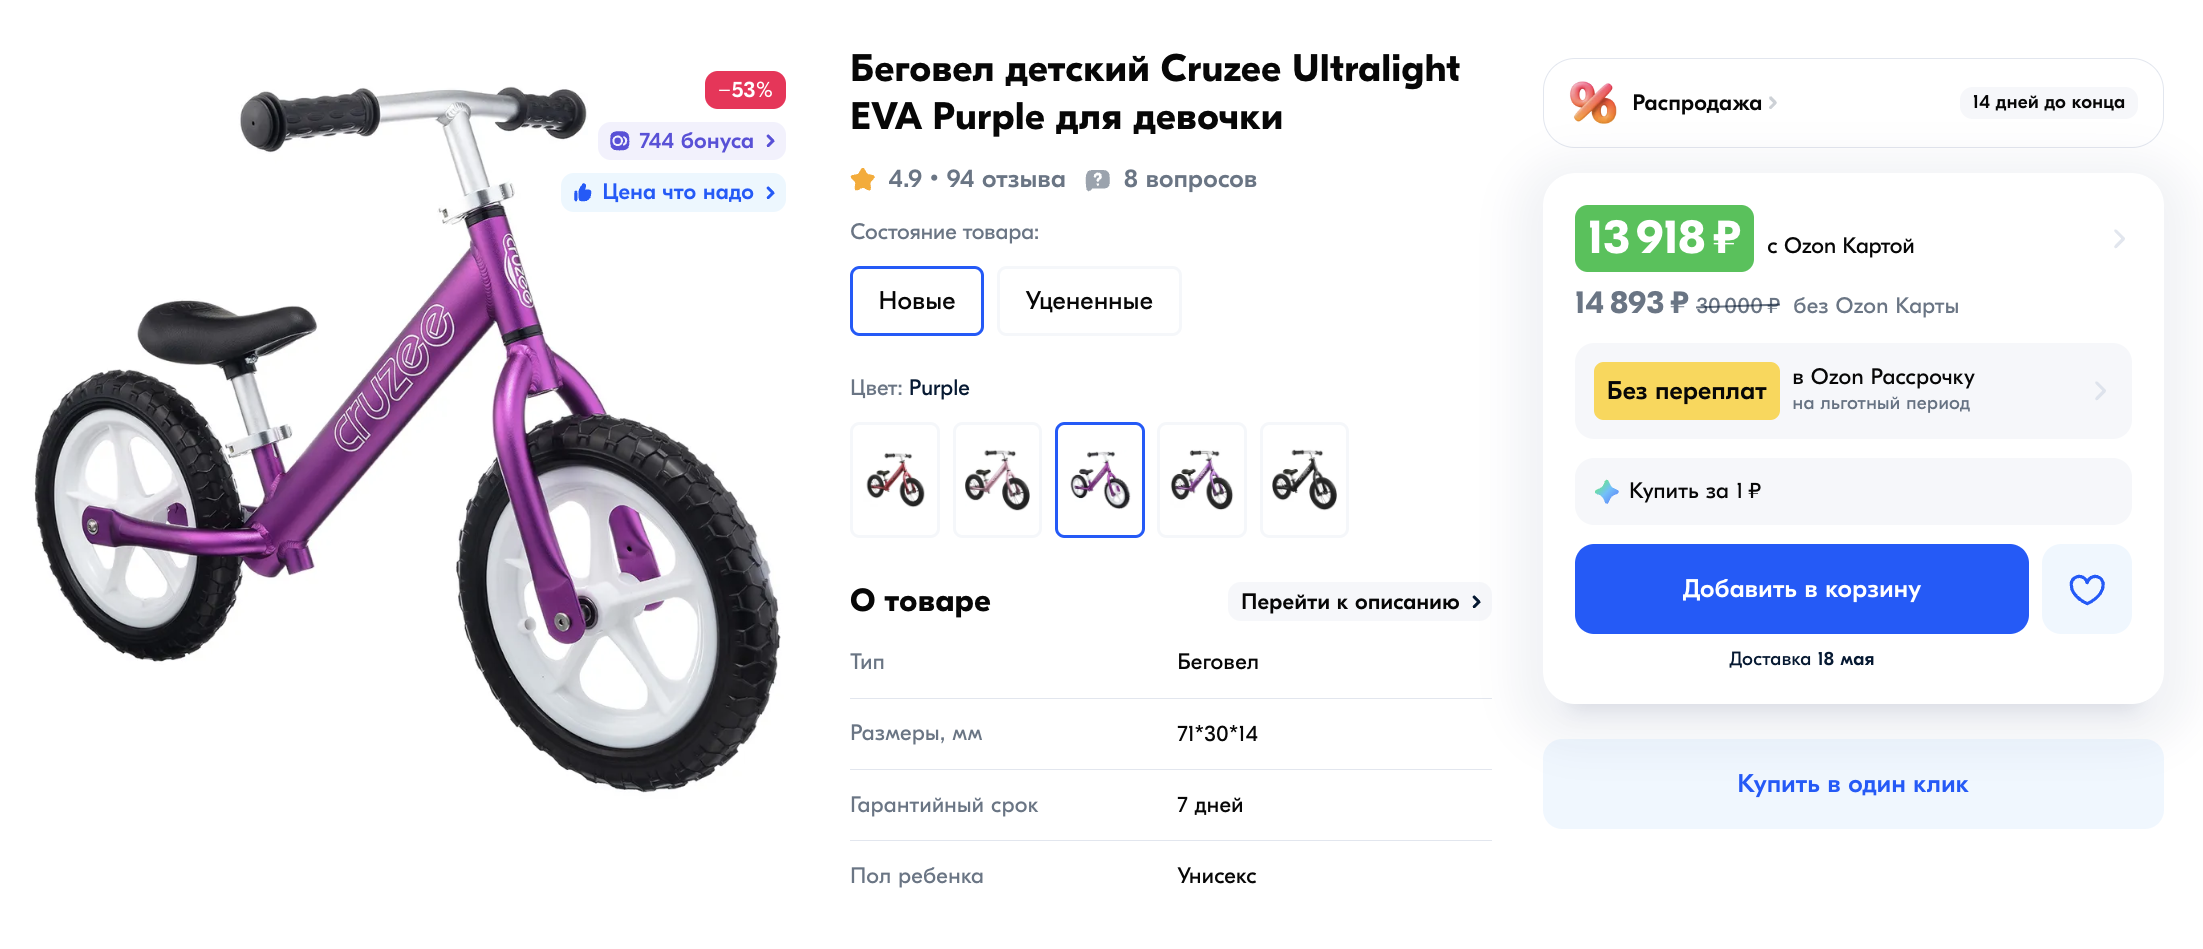 Новый беговел известного американского бренда Cruzee стоит около 15 000 ₽. Источник: ozon.ru